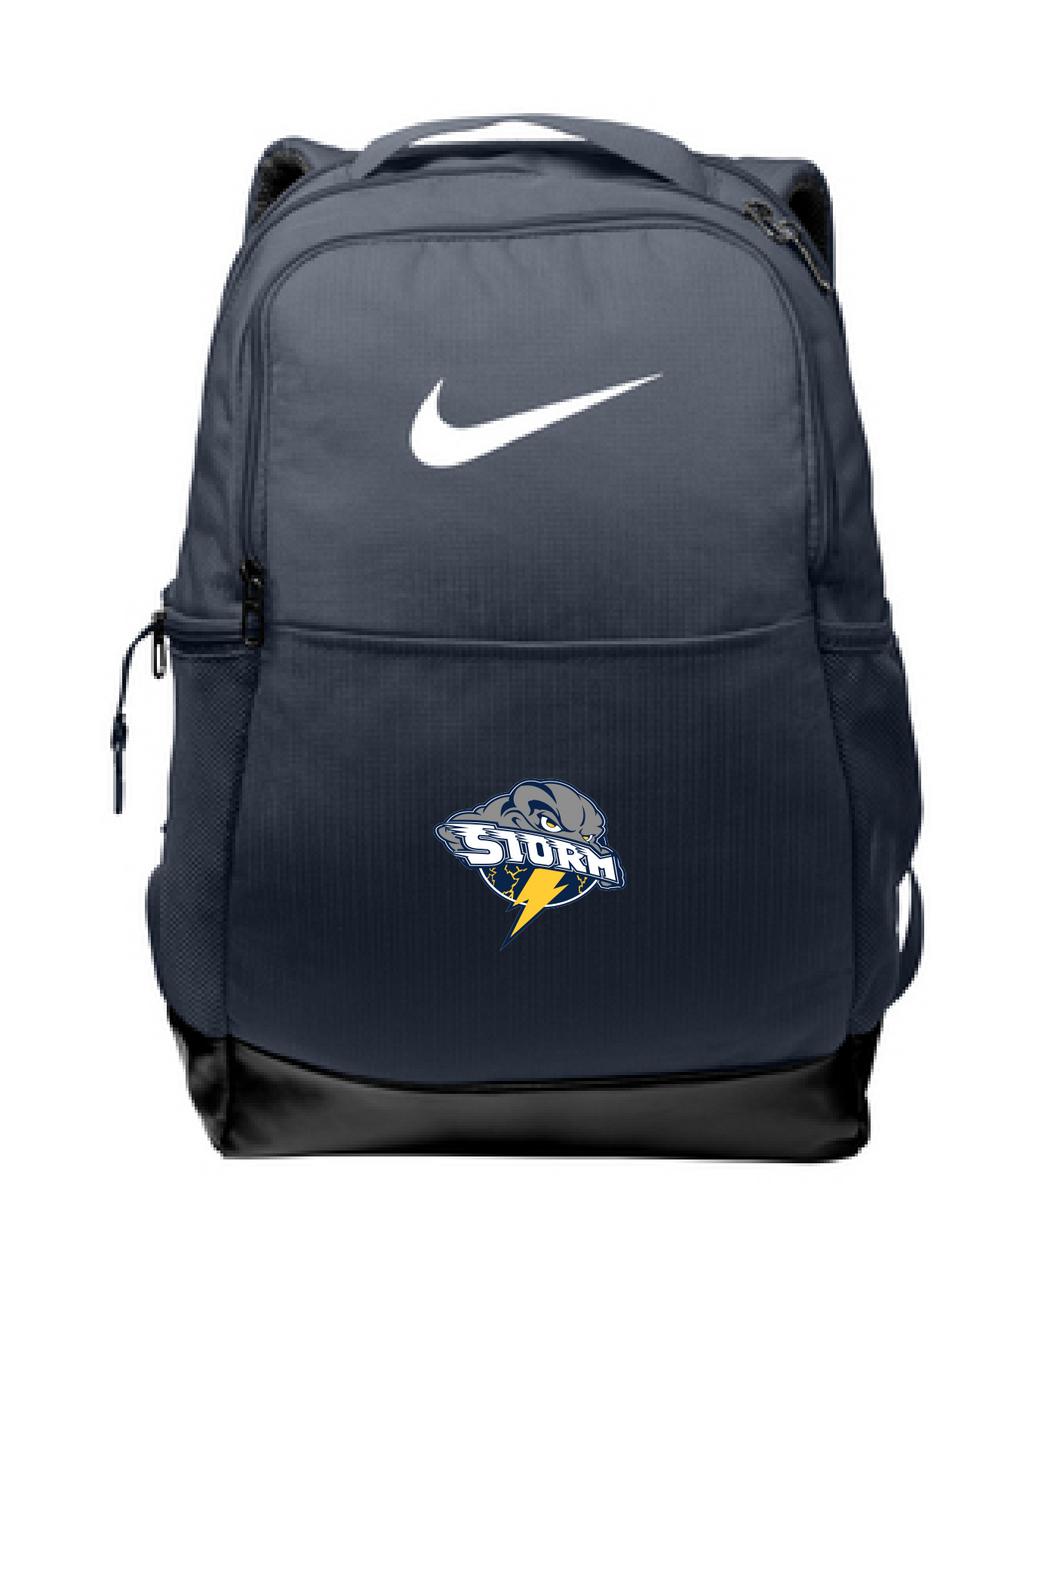 Storm Nike Backpack